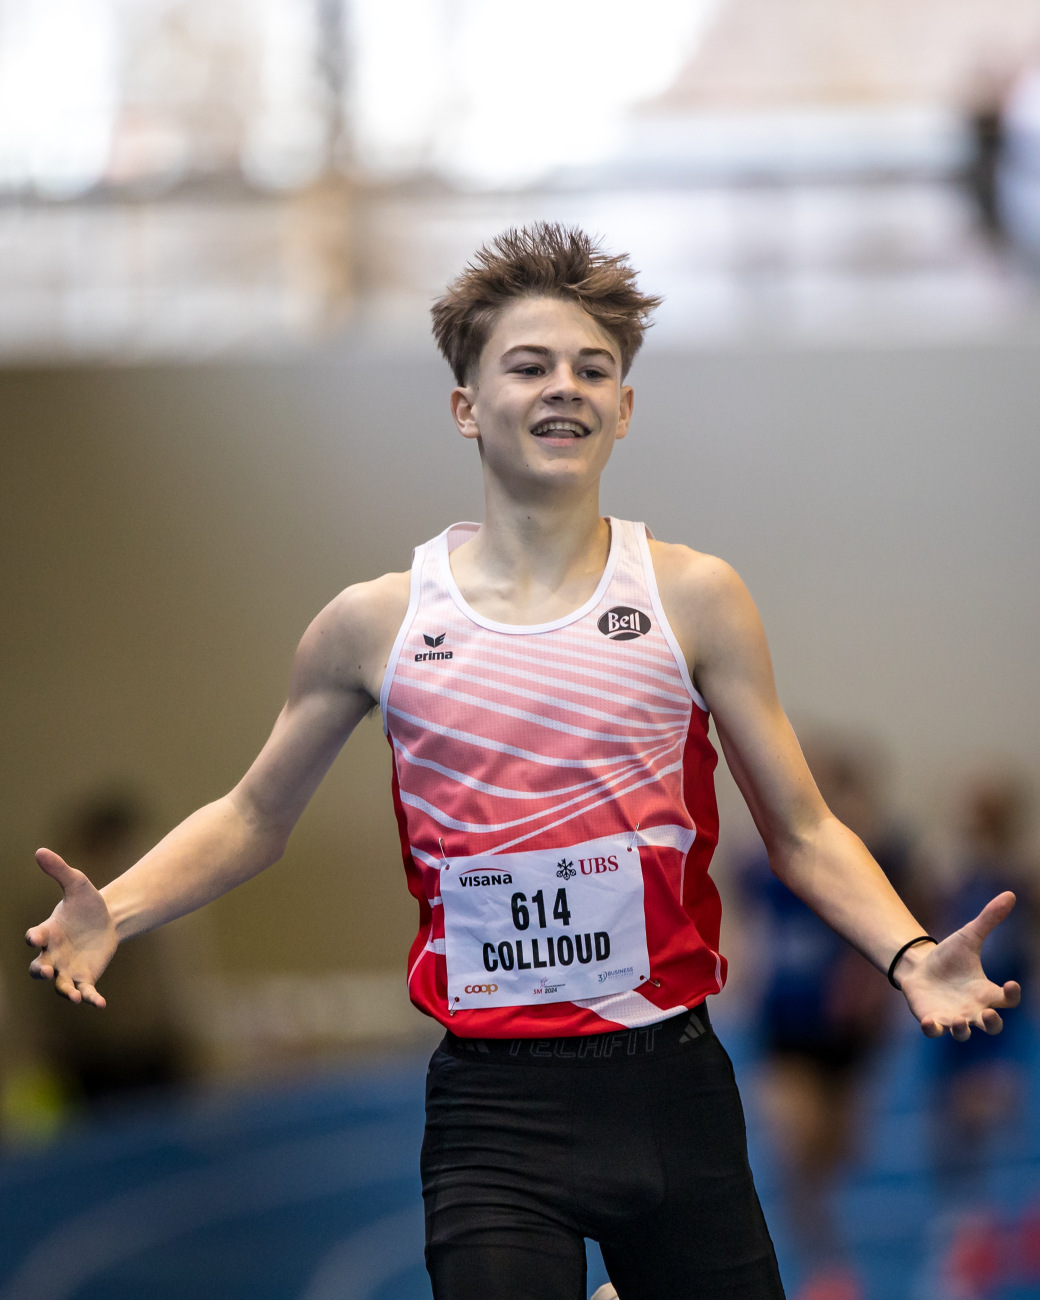 Noah Colliud u16 Indoor Swiss Champion 2024